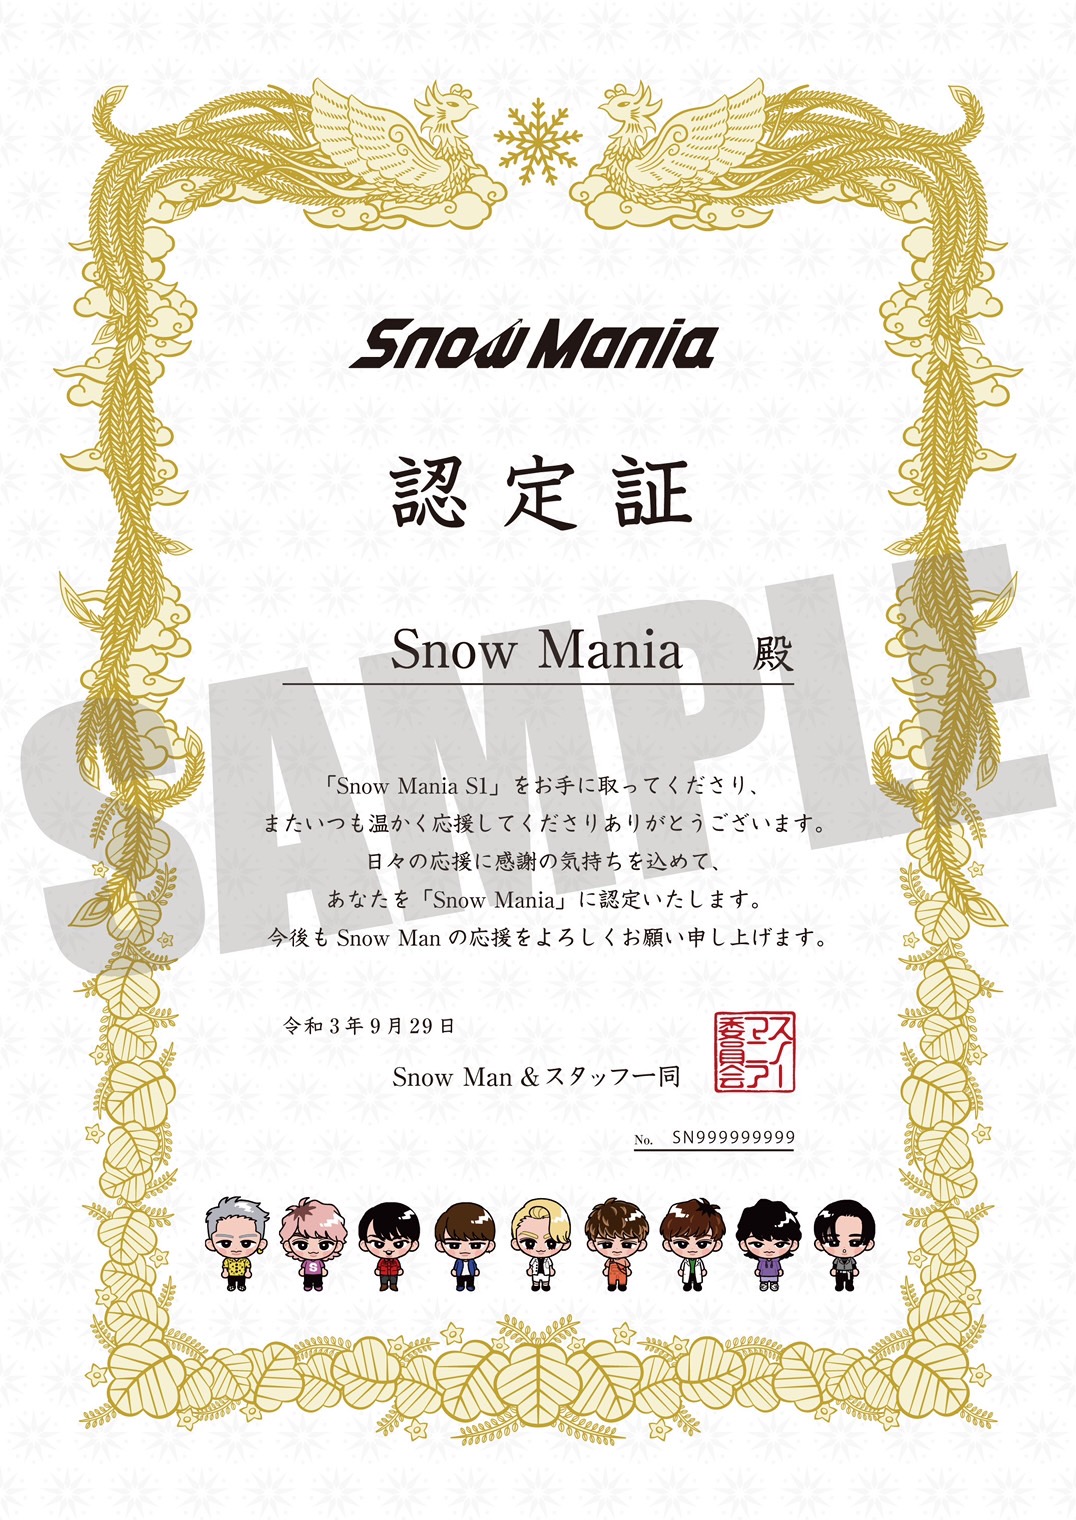 【85万枚突破】Snow Man 1st ALBUM「Snow Mania S1」好評発売中！ | スノ速 Snow Man 最新速報